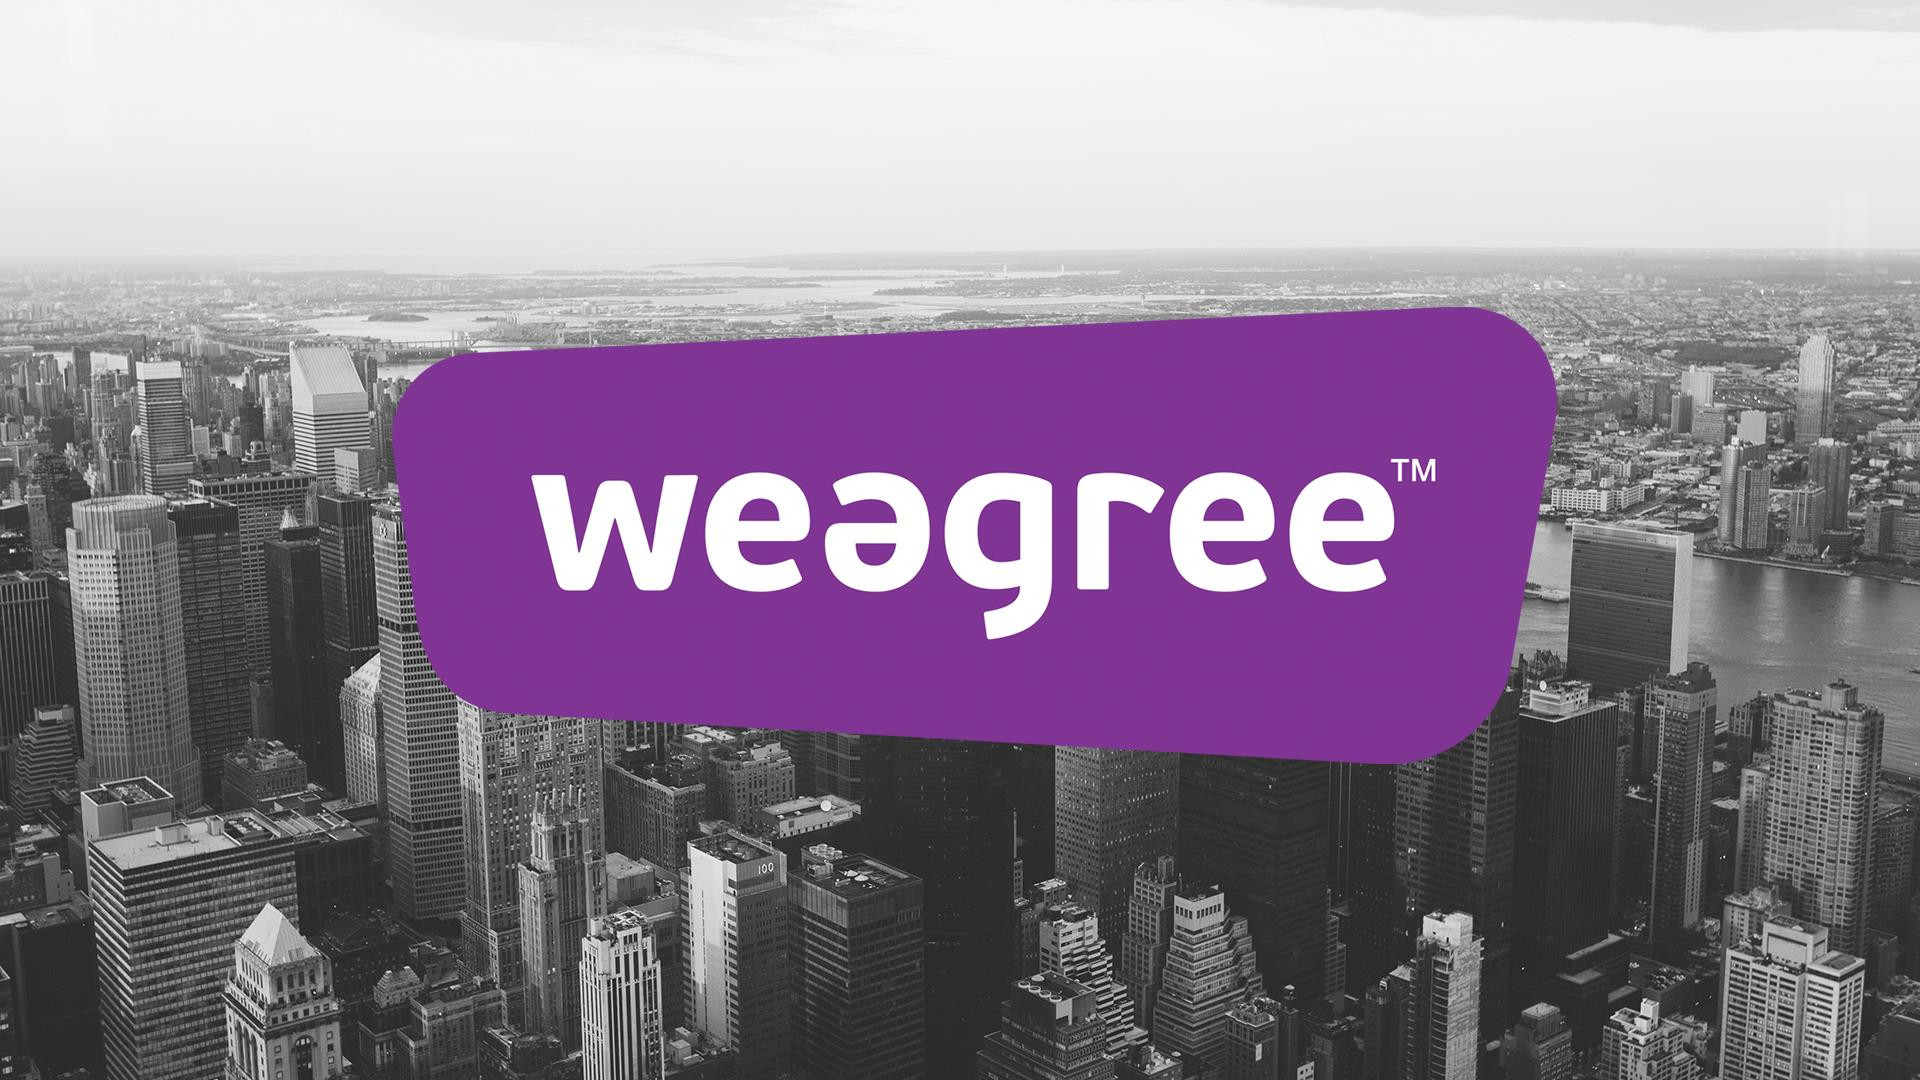 Logo Weegree